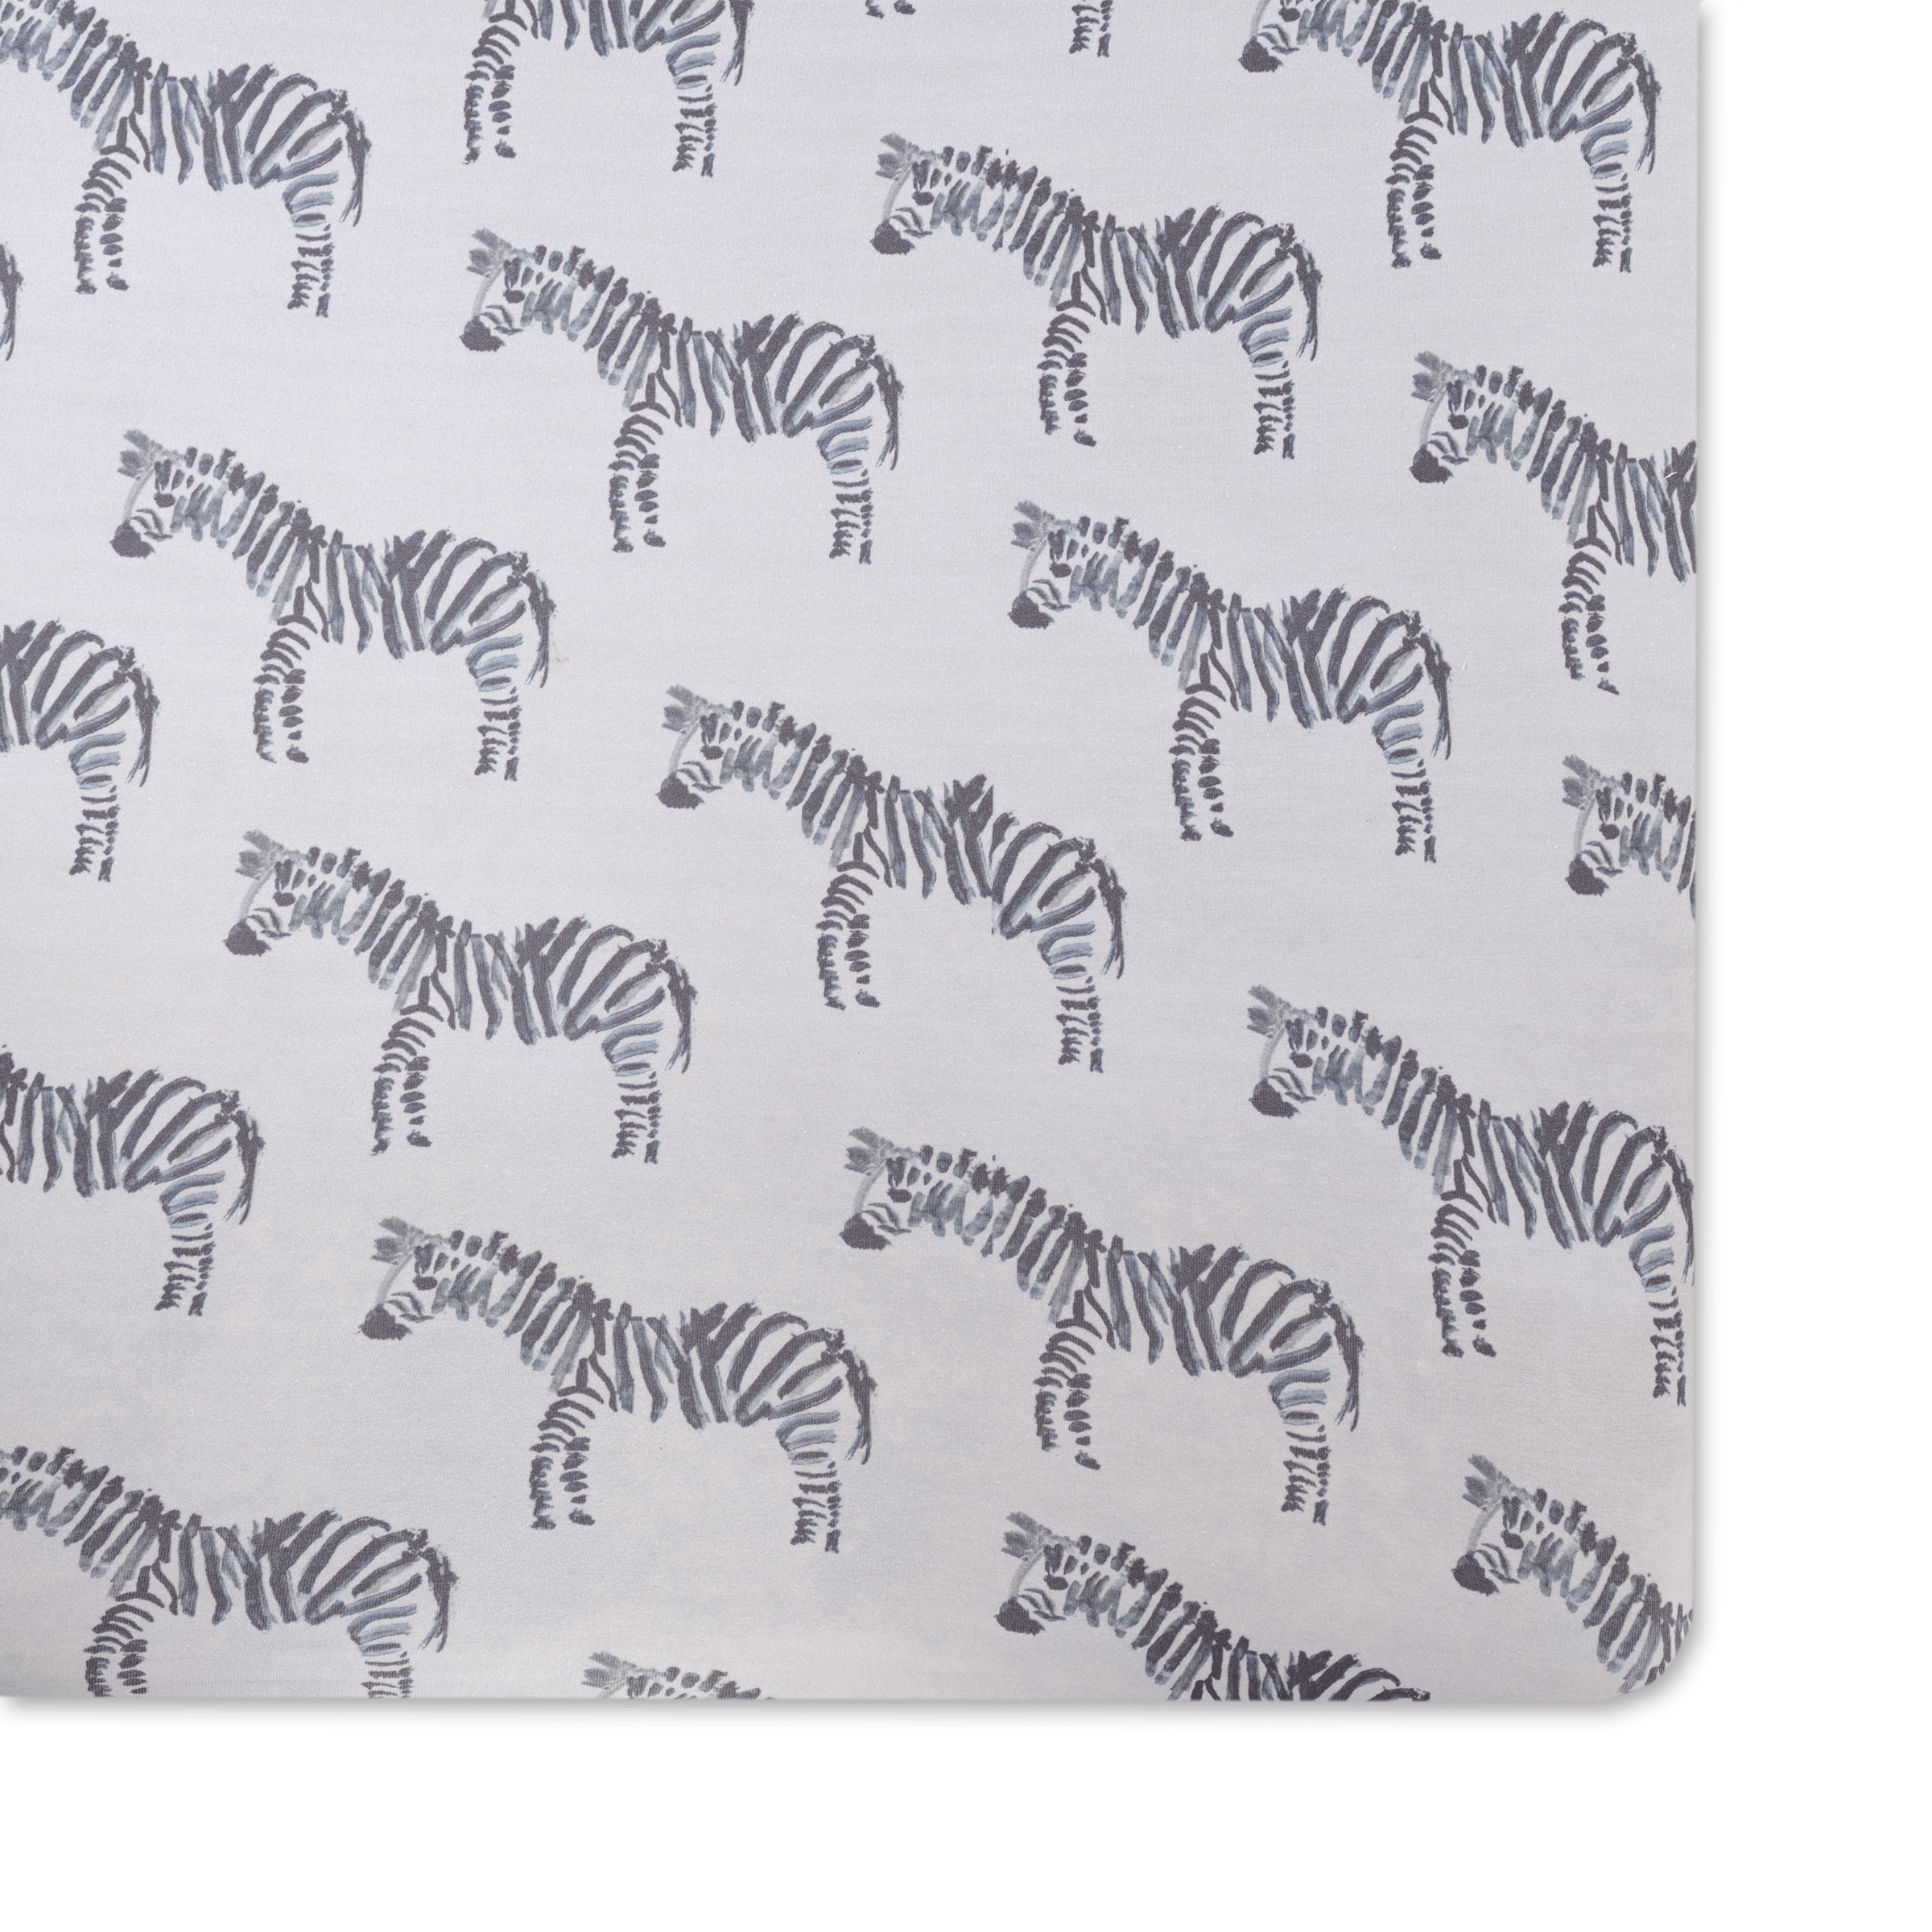 Zebra Jersey Crib Sheet - Twinkle Twinkle Little One